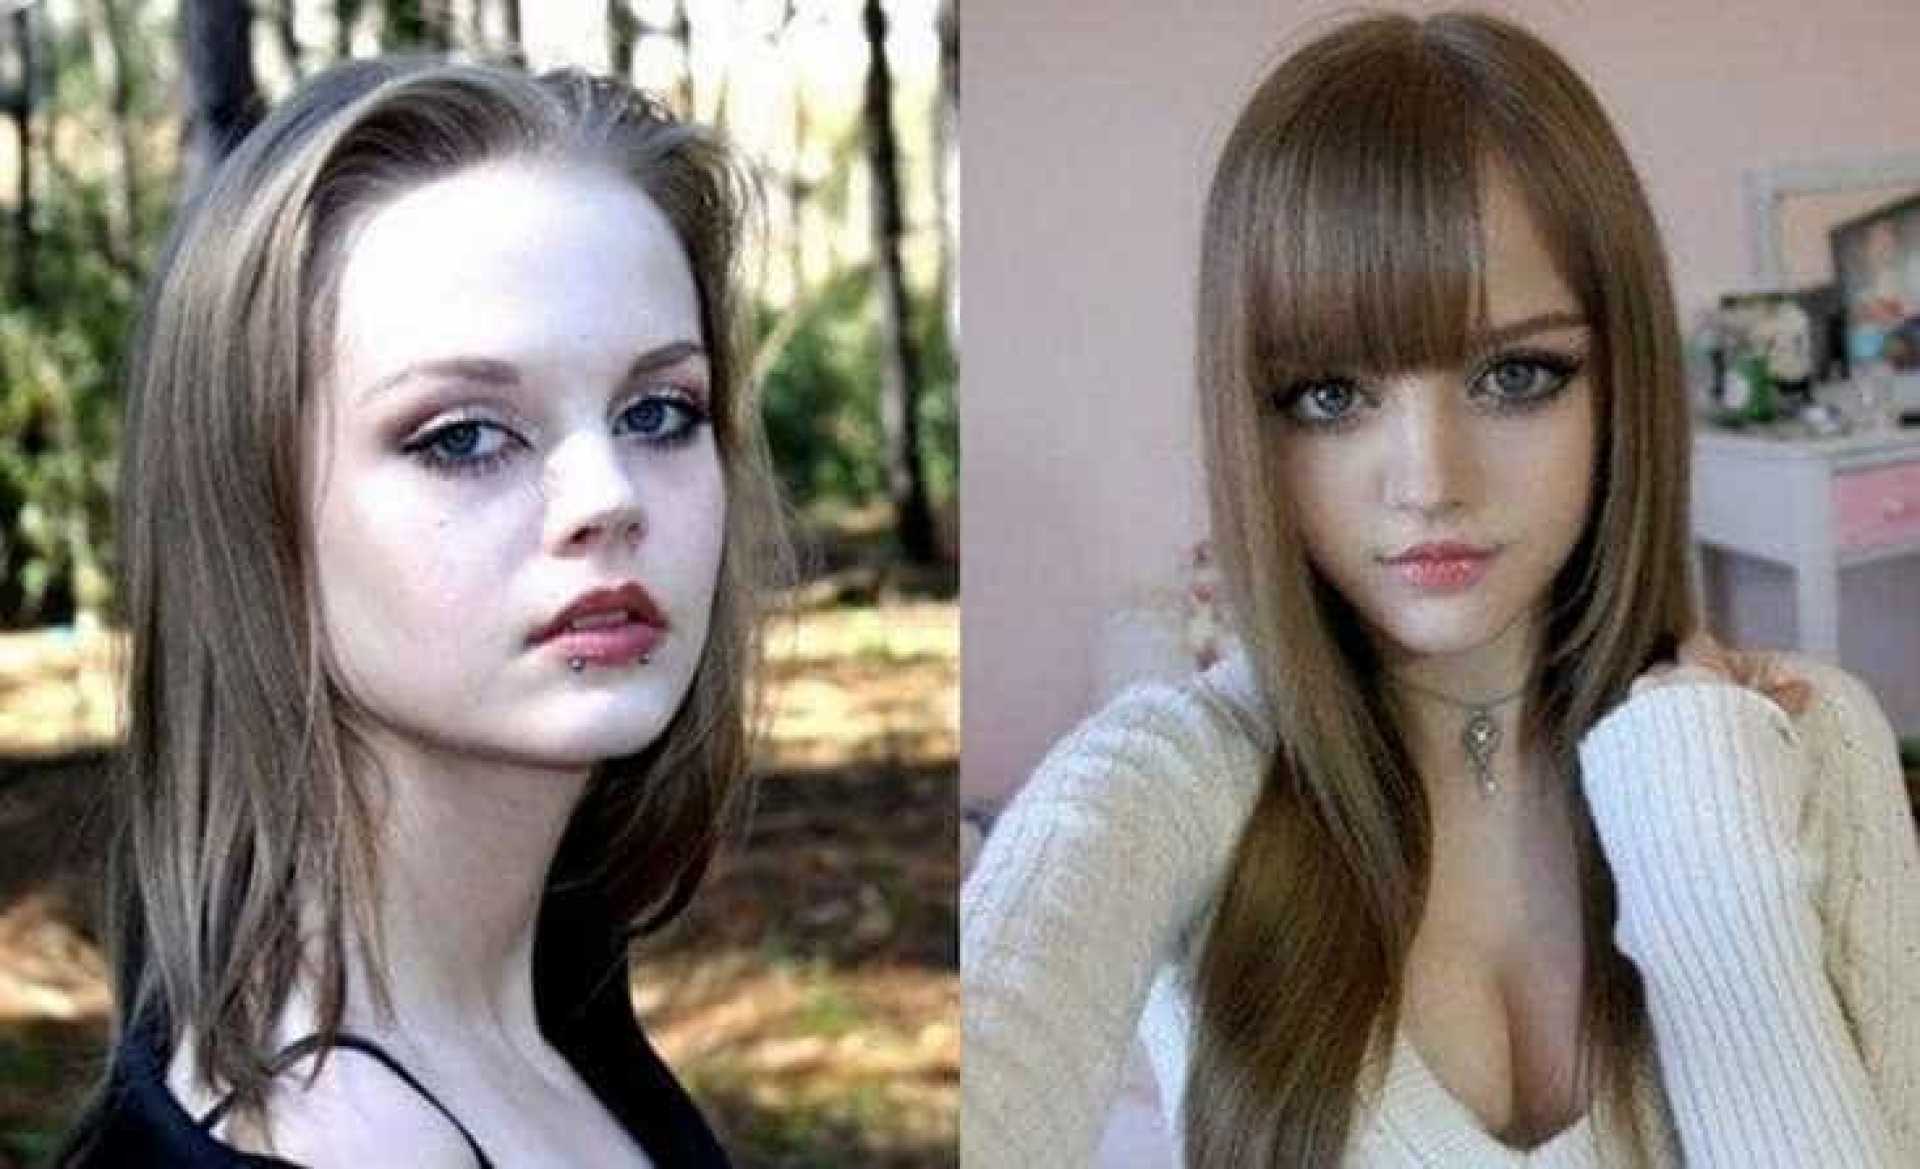 Barbie Humana Antes E Depois